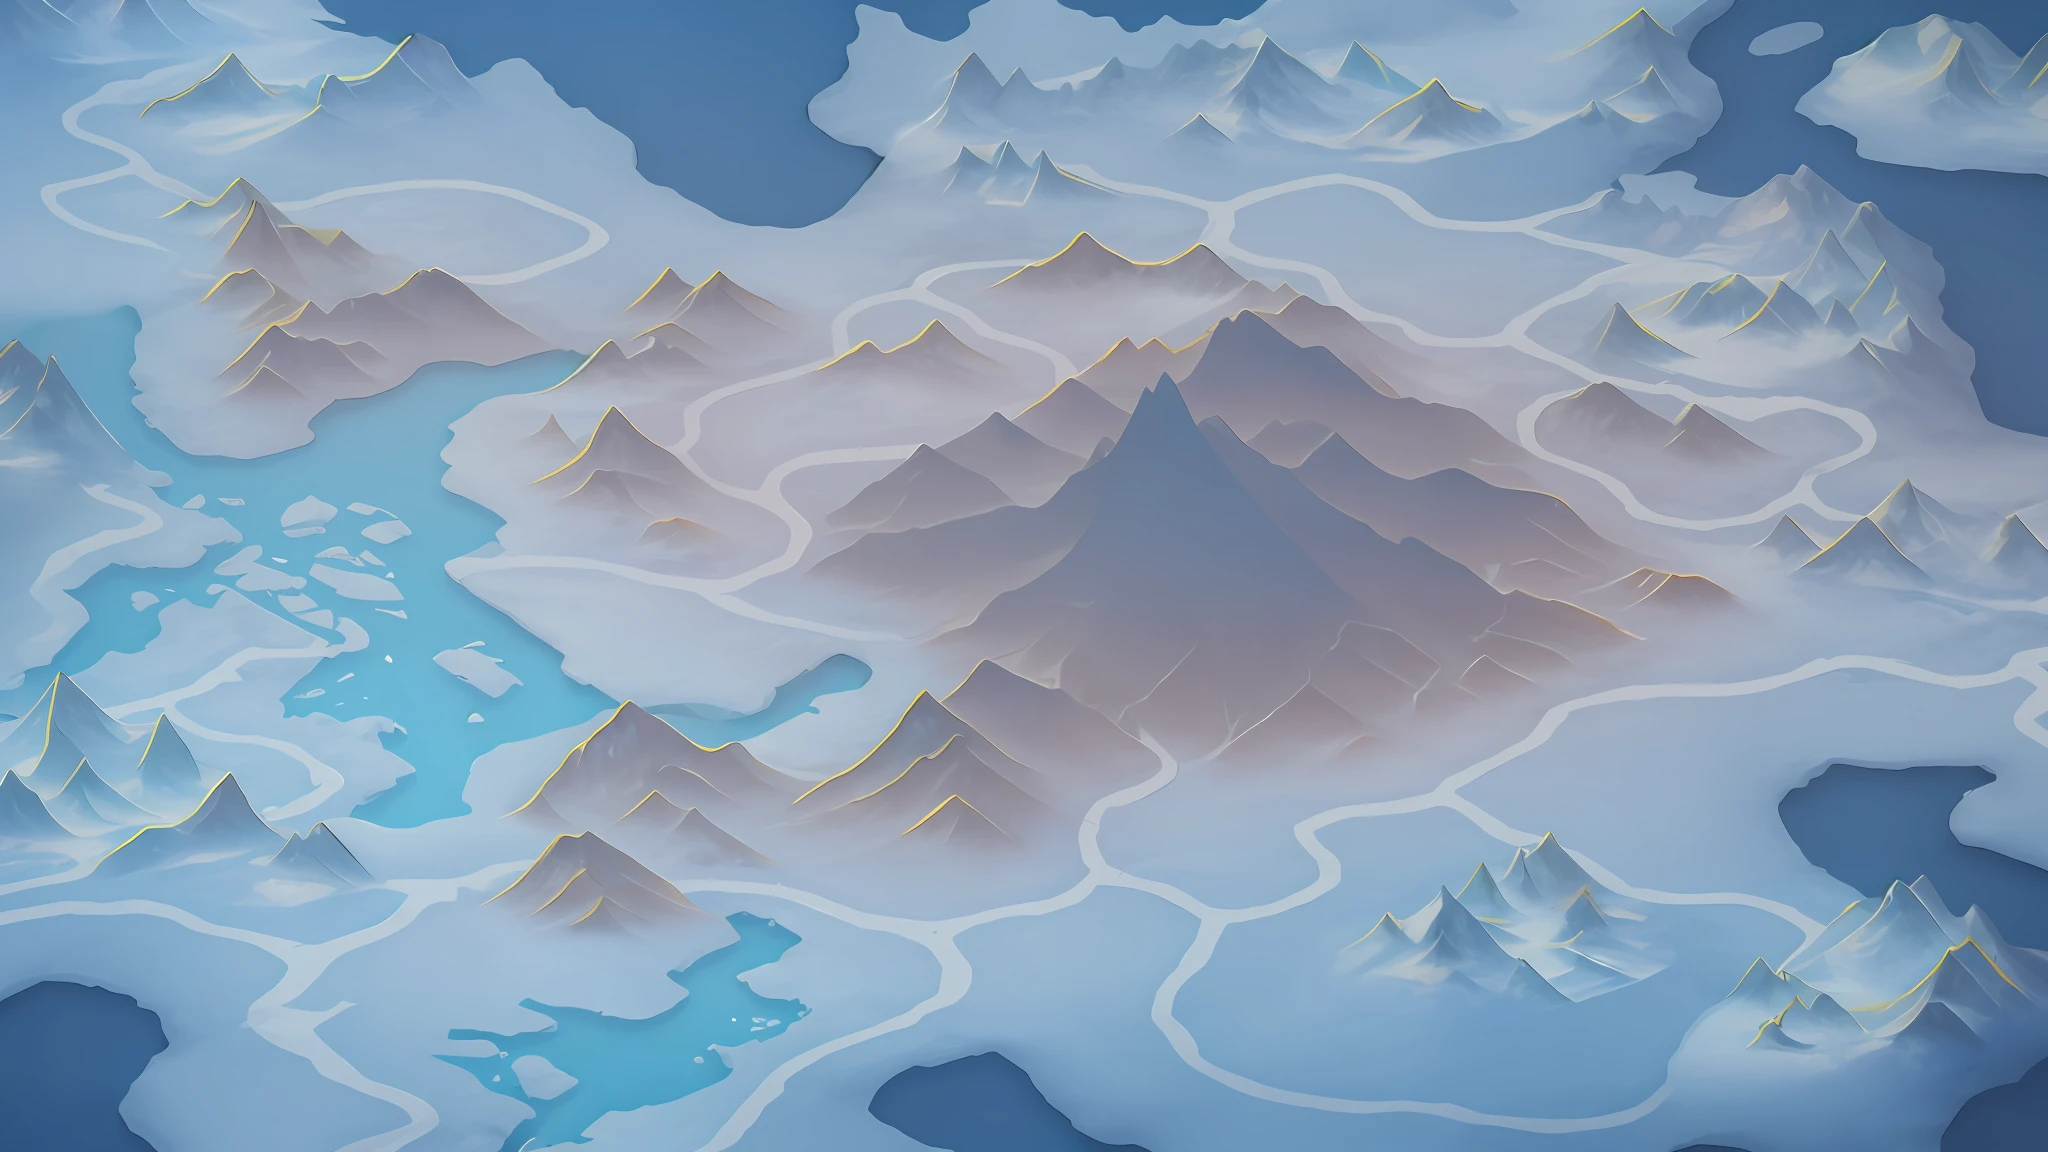 湖のある山脈の大きな地図があります, 氷のツンドラの背景, 氷山, 等角投影のファンタジーマップ, 背景に氷の山, 氷山 in the background, 山岳背景, ゲームマップマットペイント, 山の風景, 雪山, 山の海, 遠くの氷の山, 背景の山々, 詳細な風景 —幅672